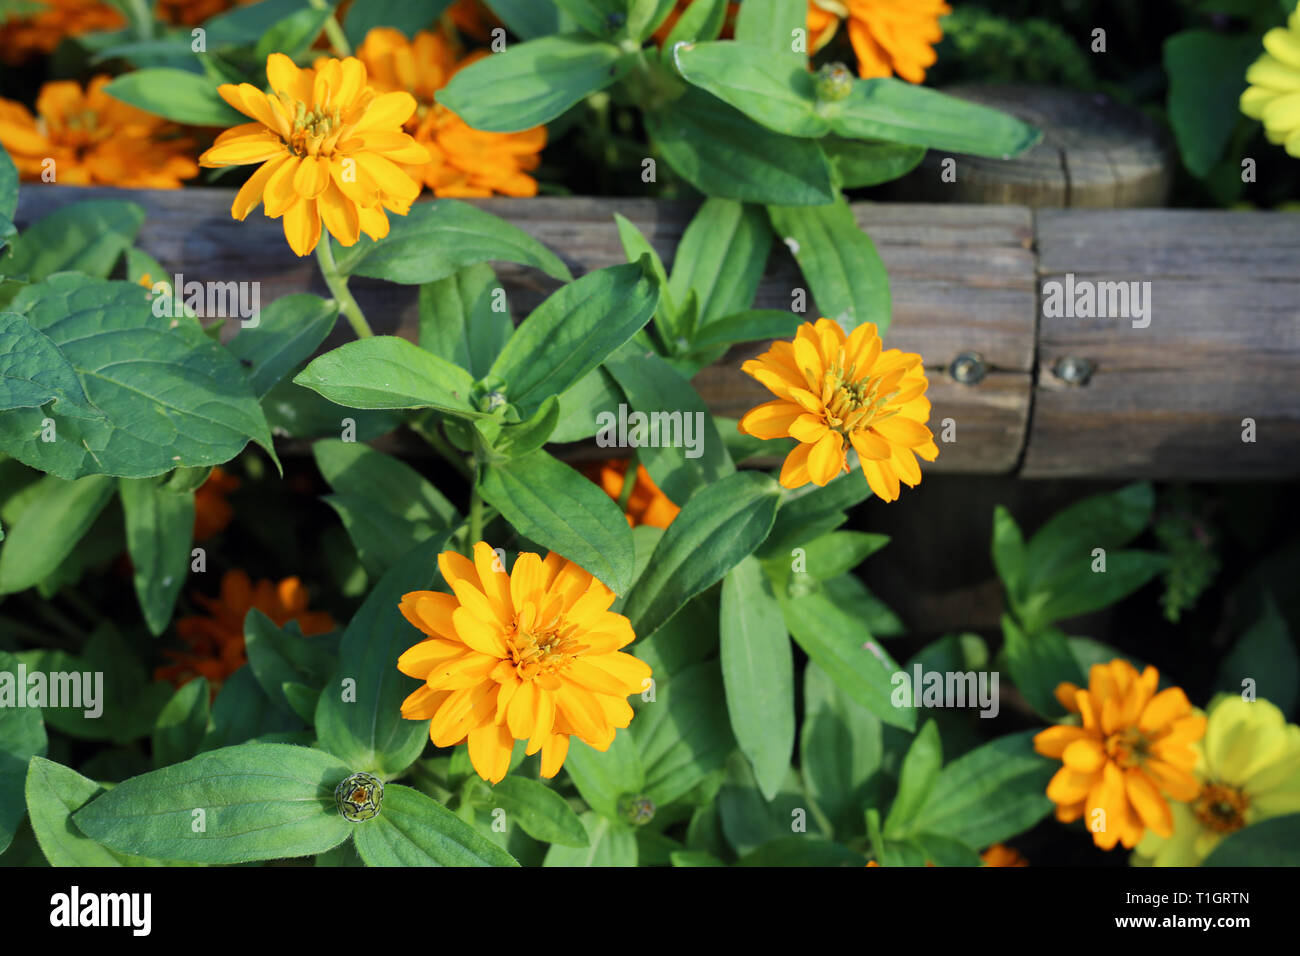 Splendida fioritura di fiori d'arancio con abbondanza di foglie verdi fotografato durante una soleggiata giornata estiva. Incantevole e fiori colorati con un sacco di dettagli. Foto Stock